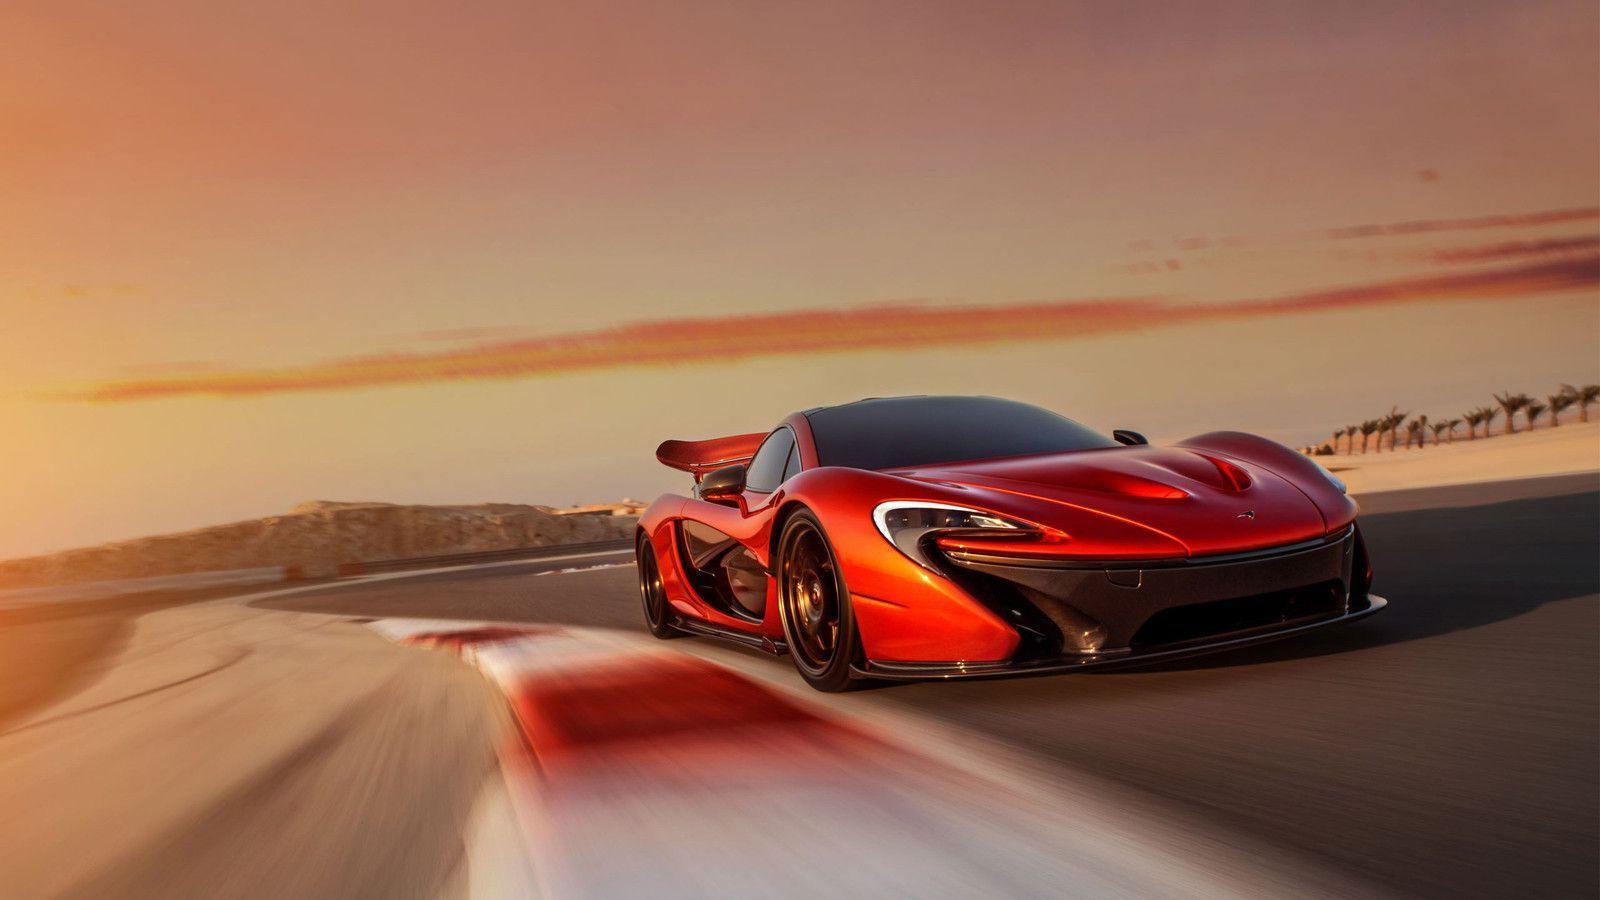 McLaren supercar wallpapers download